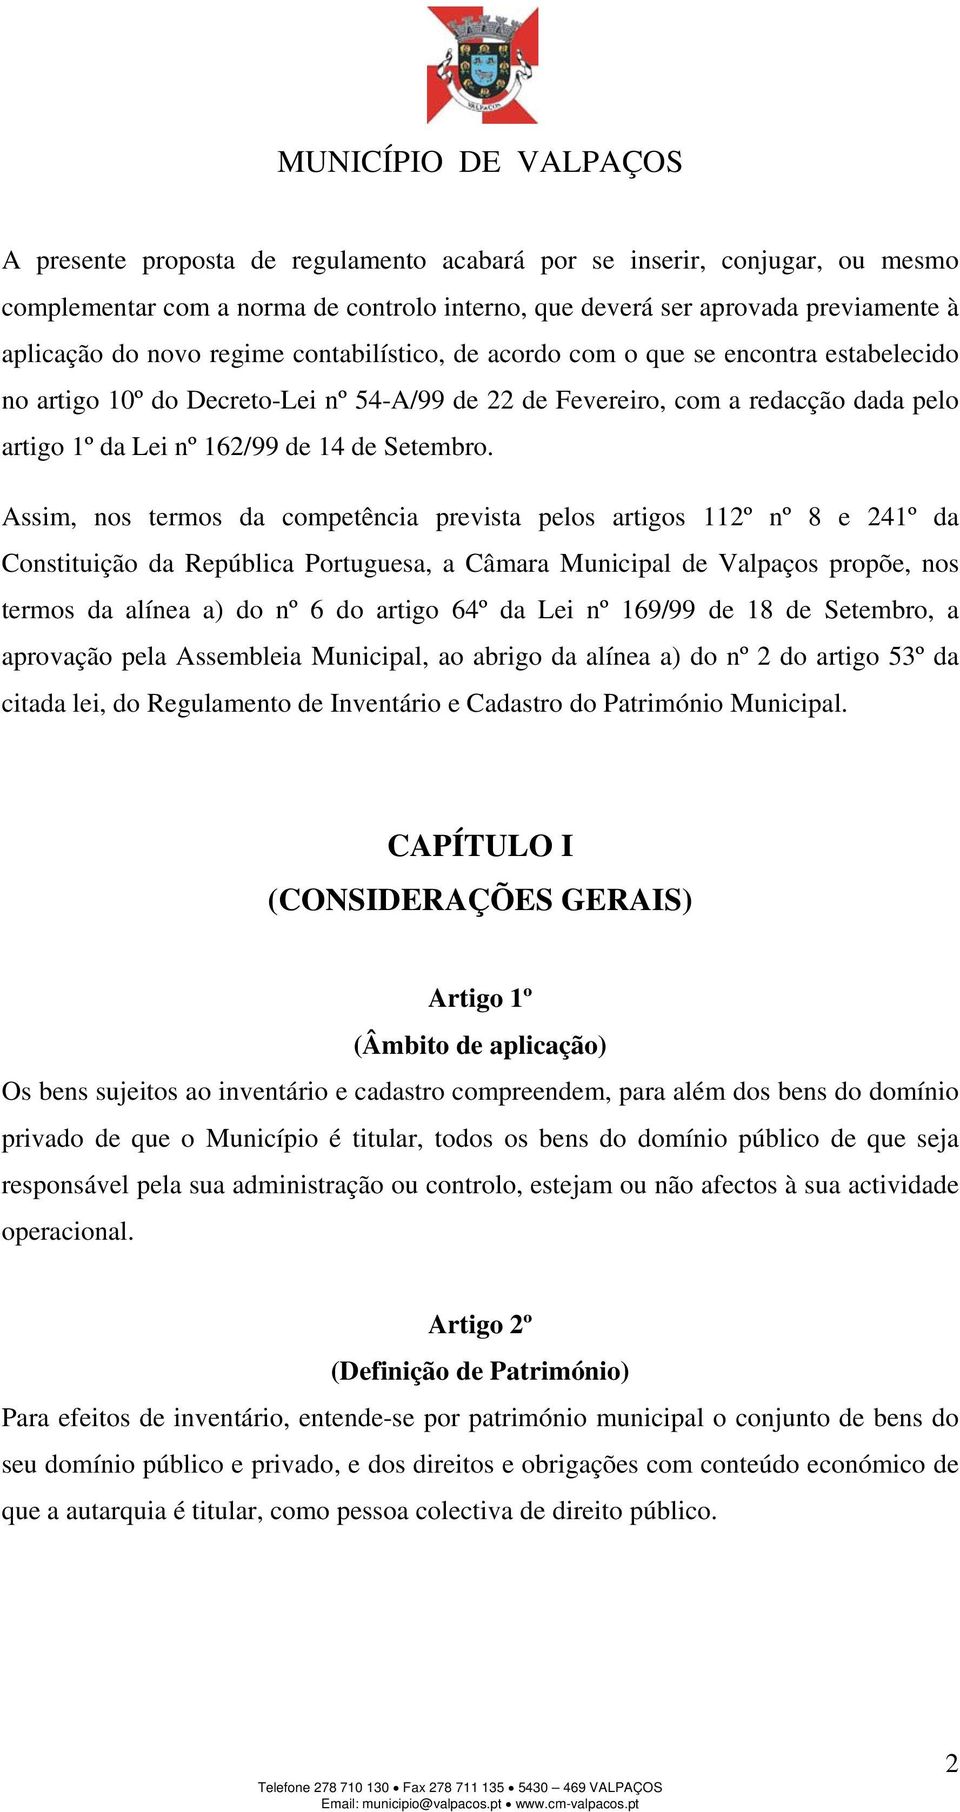 Assim, nos termos da competência prevista pelos artigos 112º nº 8 e 241º da Constituição da República Portuguesa, a Câmara Municipal de Valpaços propõe, nos termos da alínea a) do nº 6 do artigo 64º